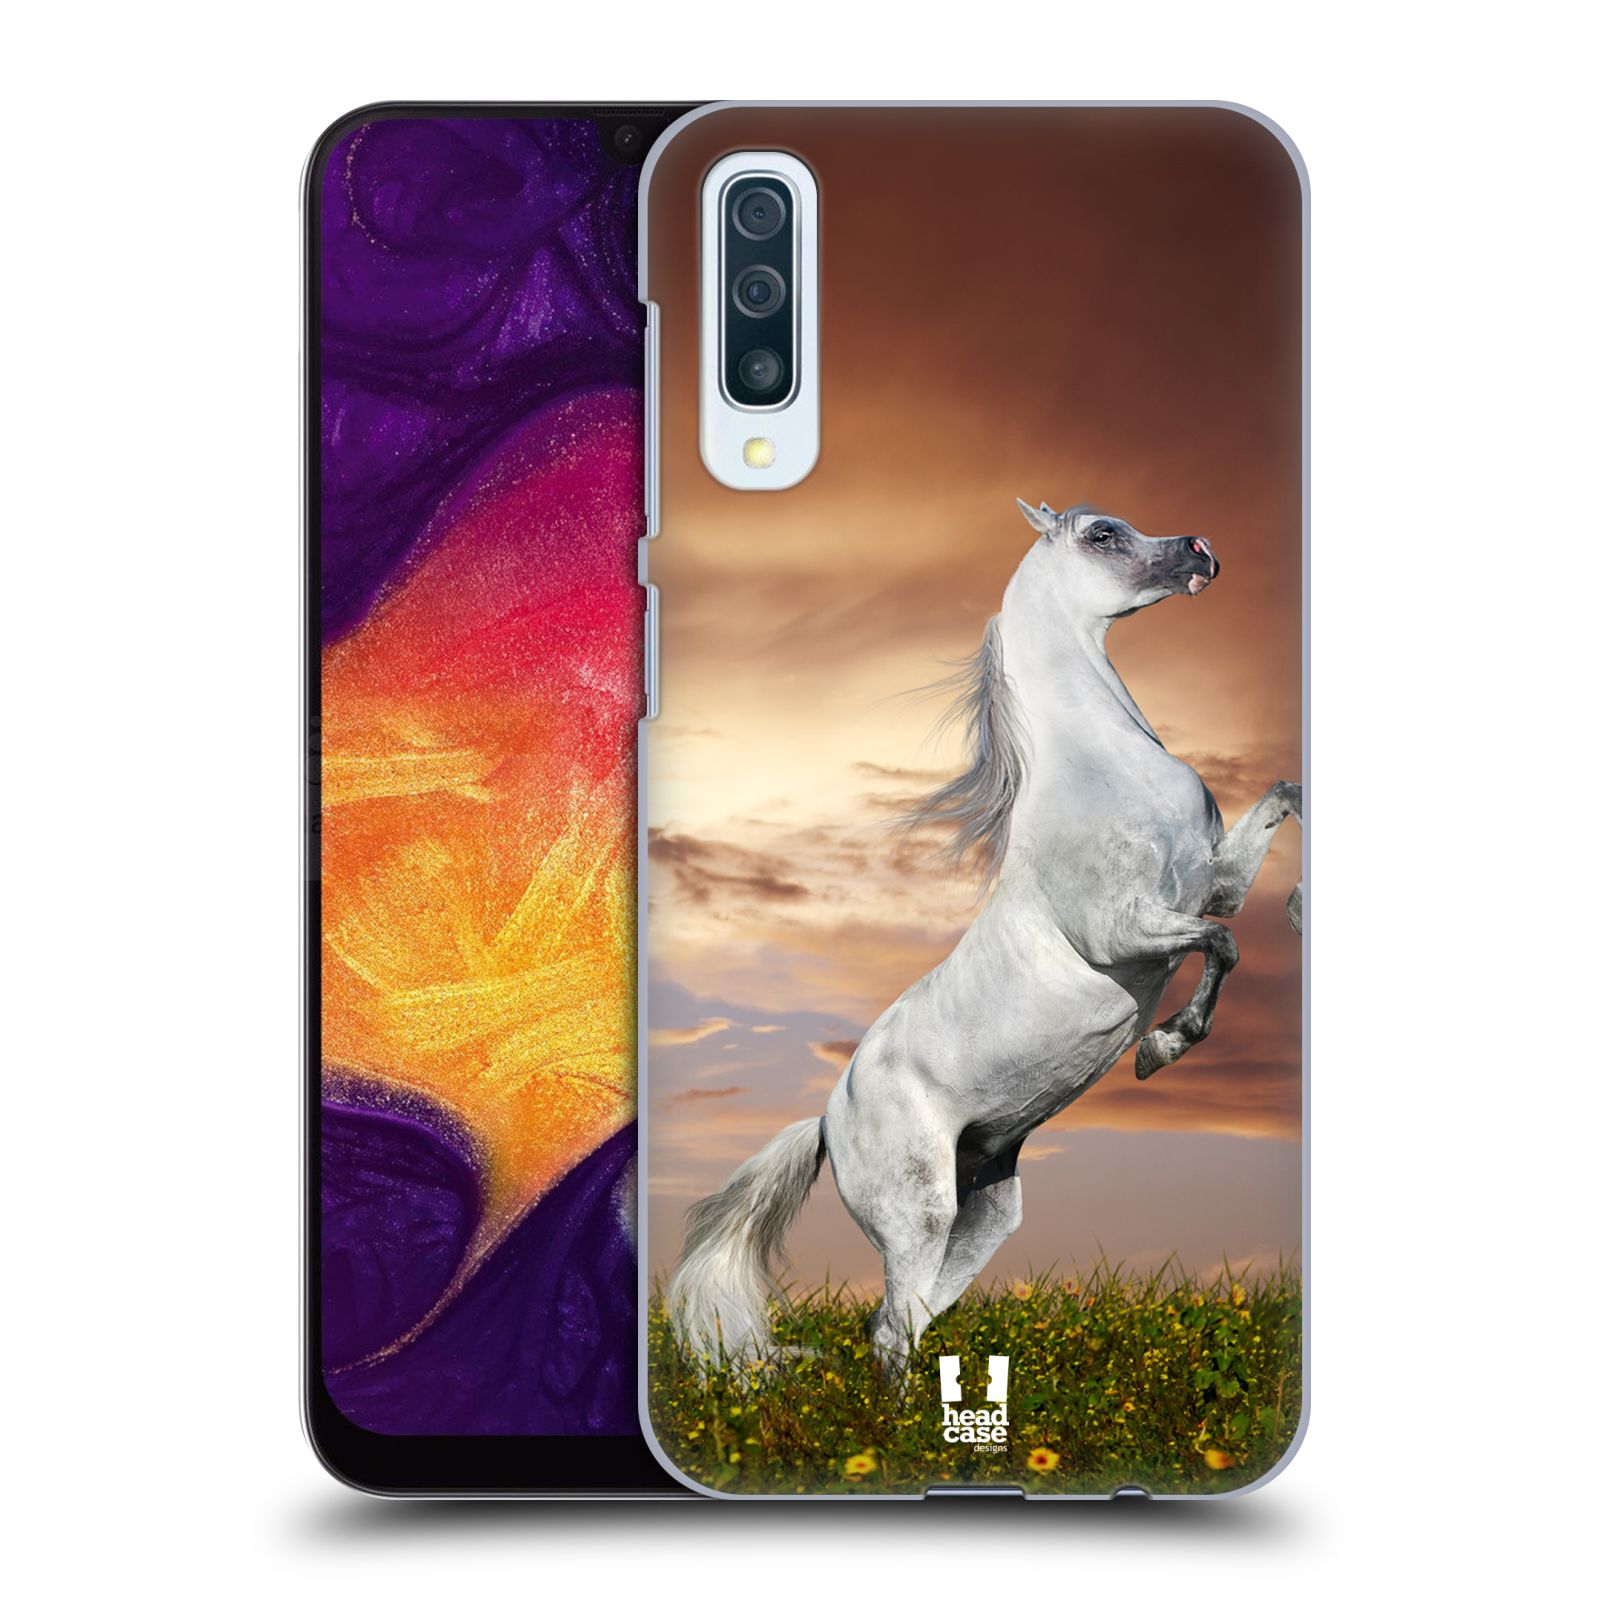 Zadní obal pro mobil Samsung Galaxy A50 / A30s - HEAD CASE - Svět zvířat divoký kůň